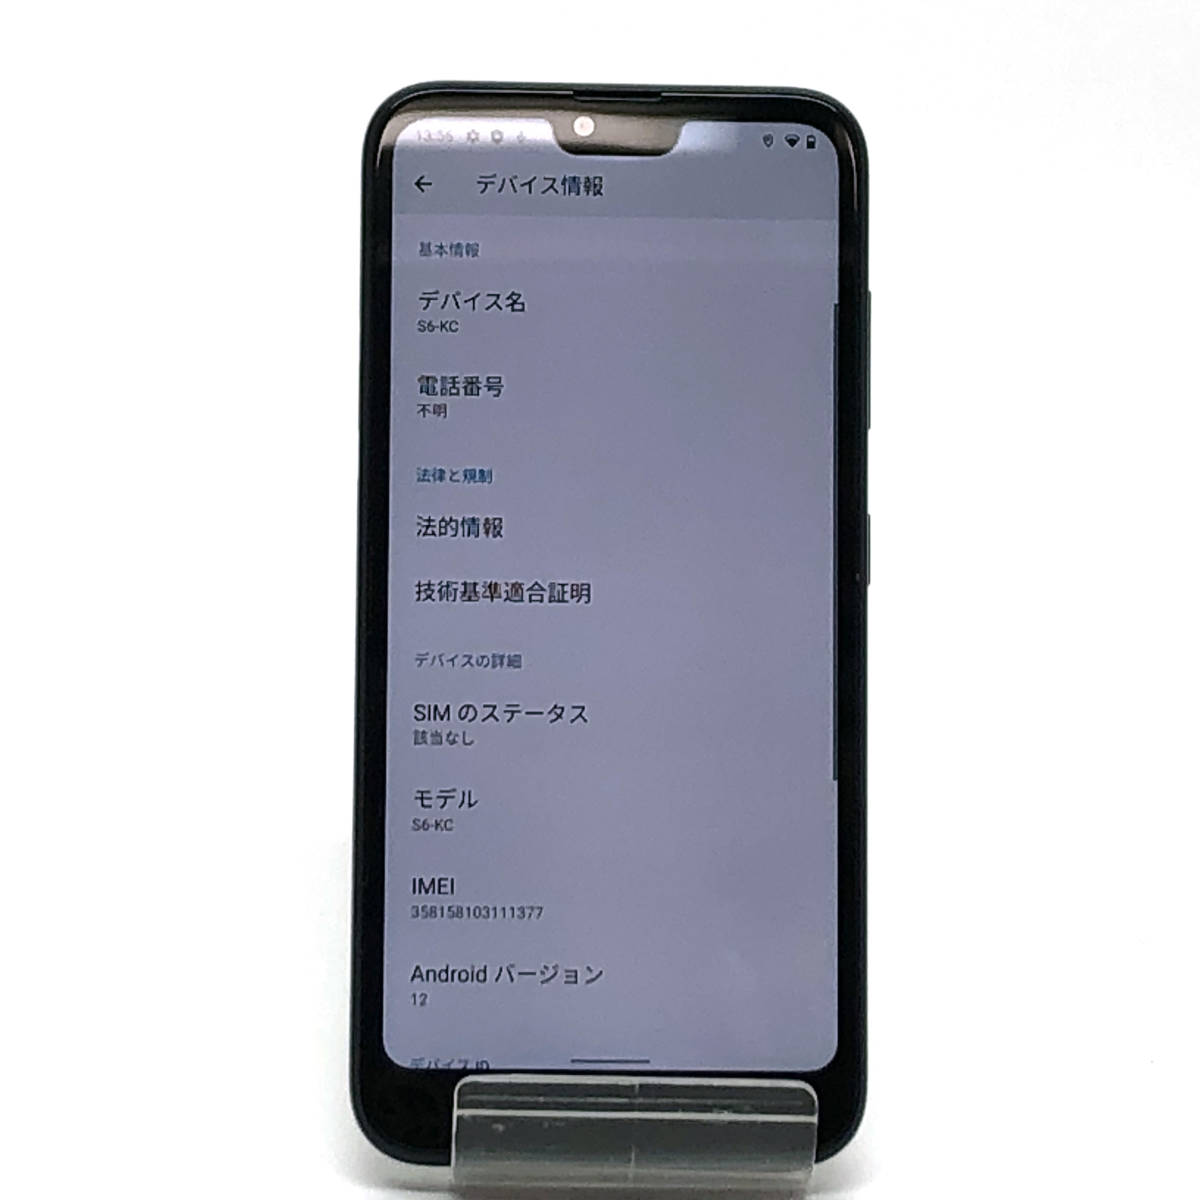 tu113 京セラ Android One S6 S6-KC スマートフォン 32GB ソフトバンク ※SIMロック未解除/中古_画像3